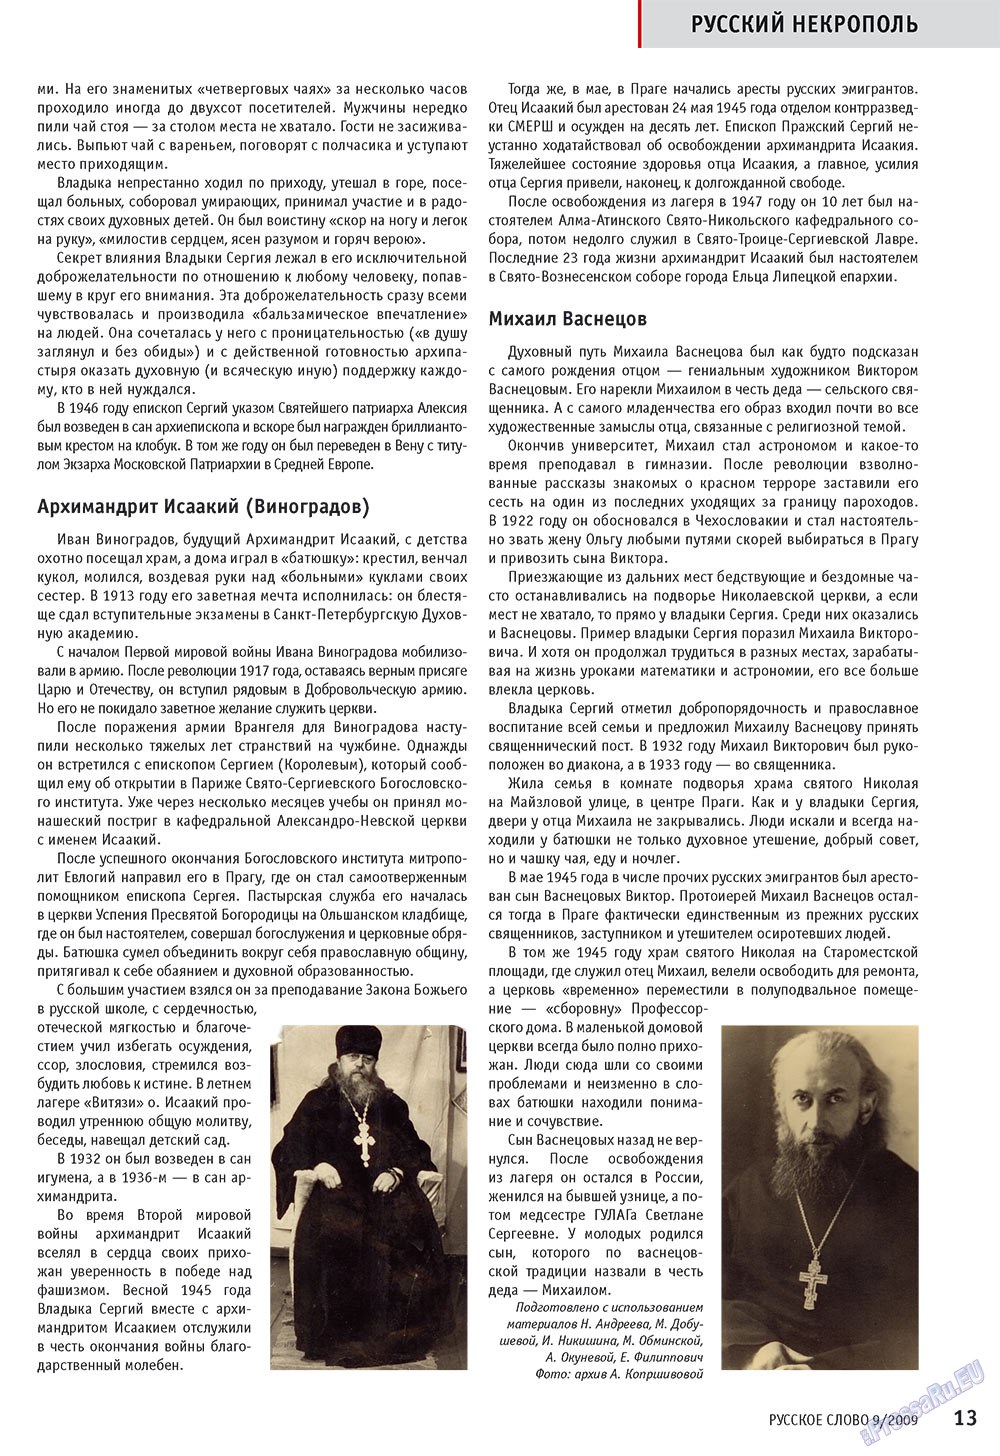 Русское слово, журнал. 2009 №9 стр.15